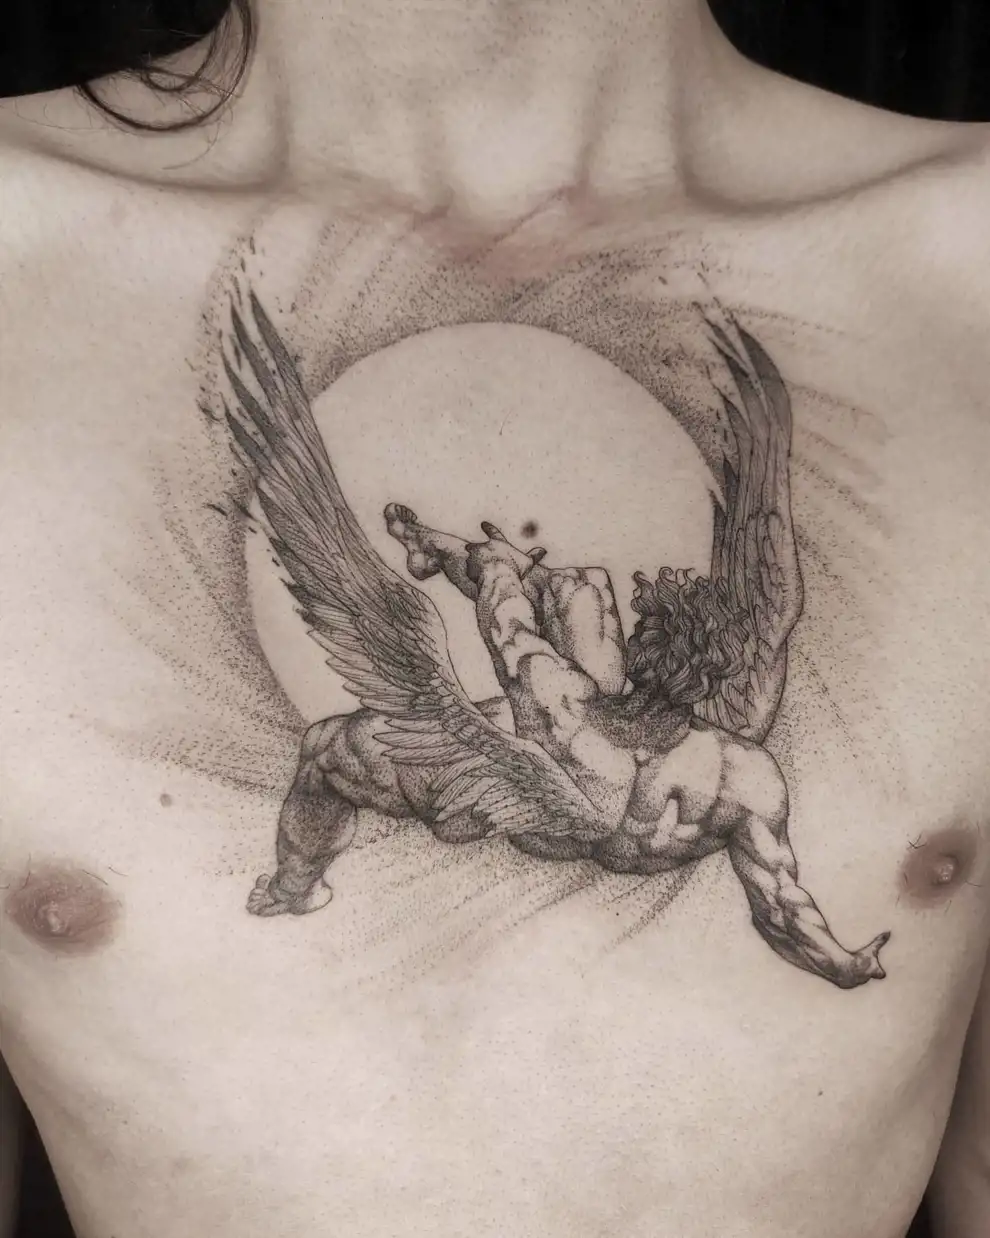 Tatuajes sobre mitología griega: Ícaro